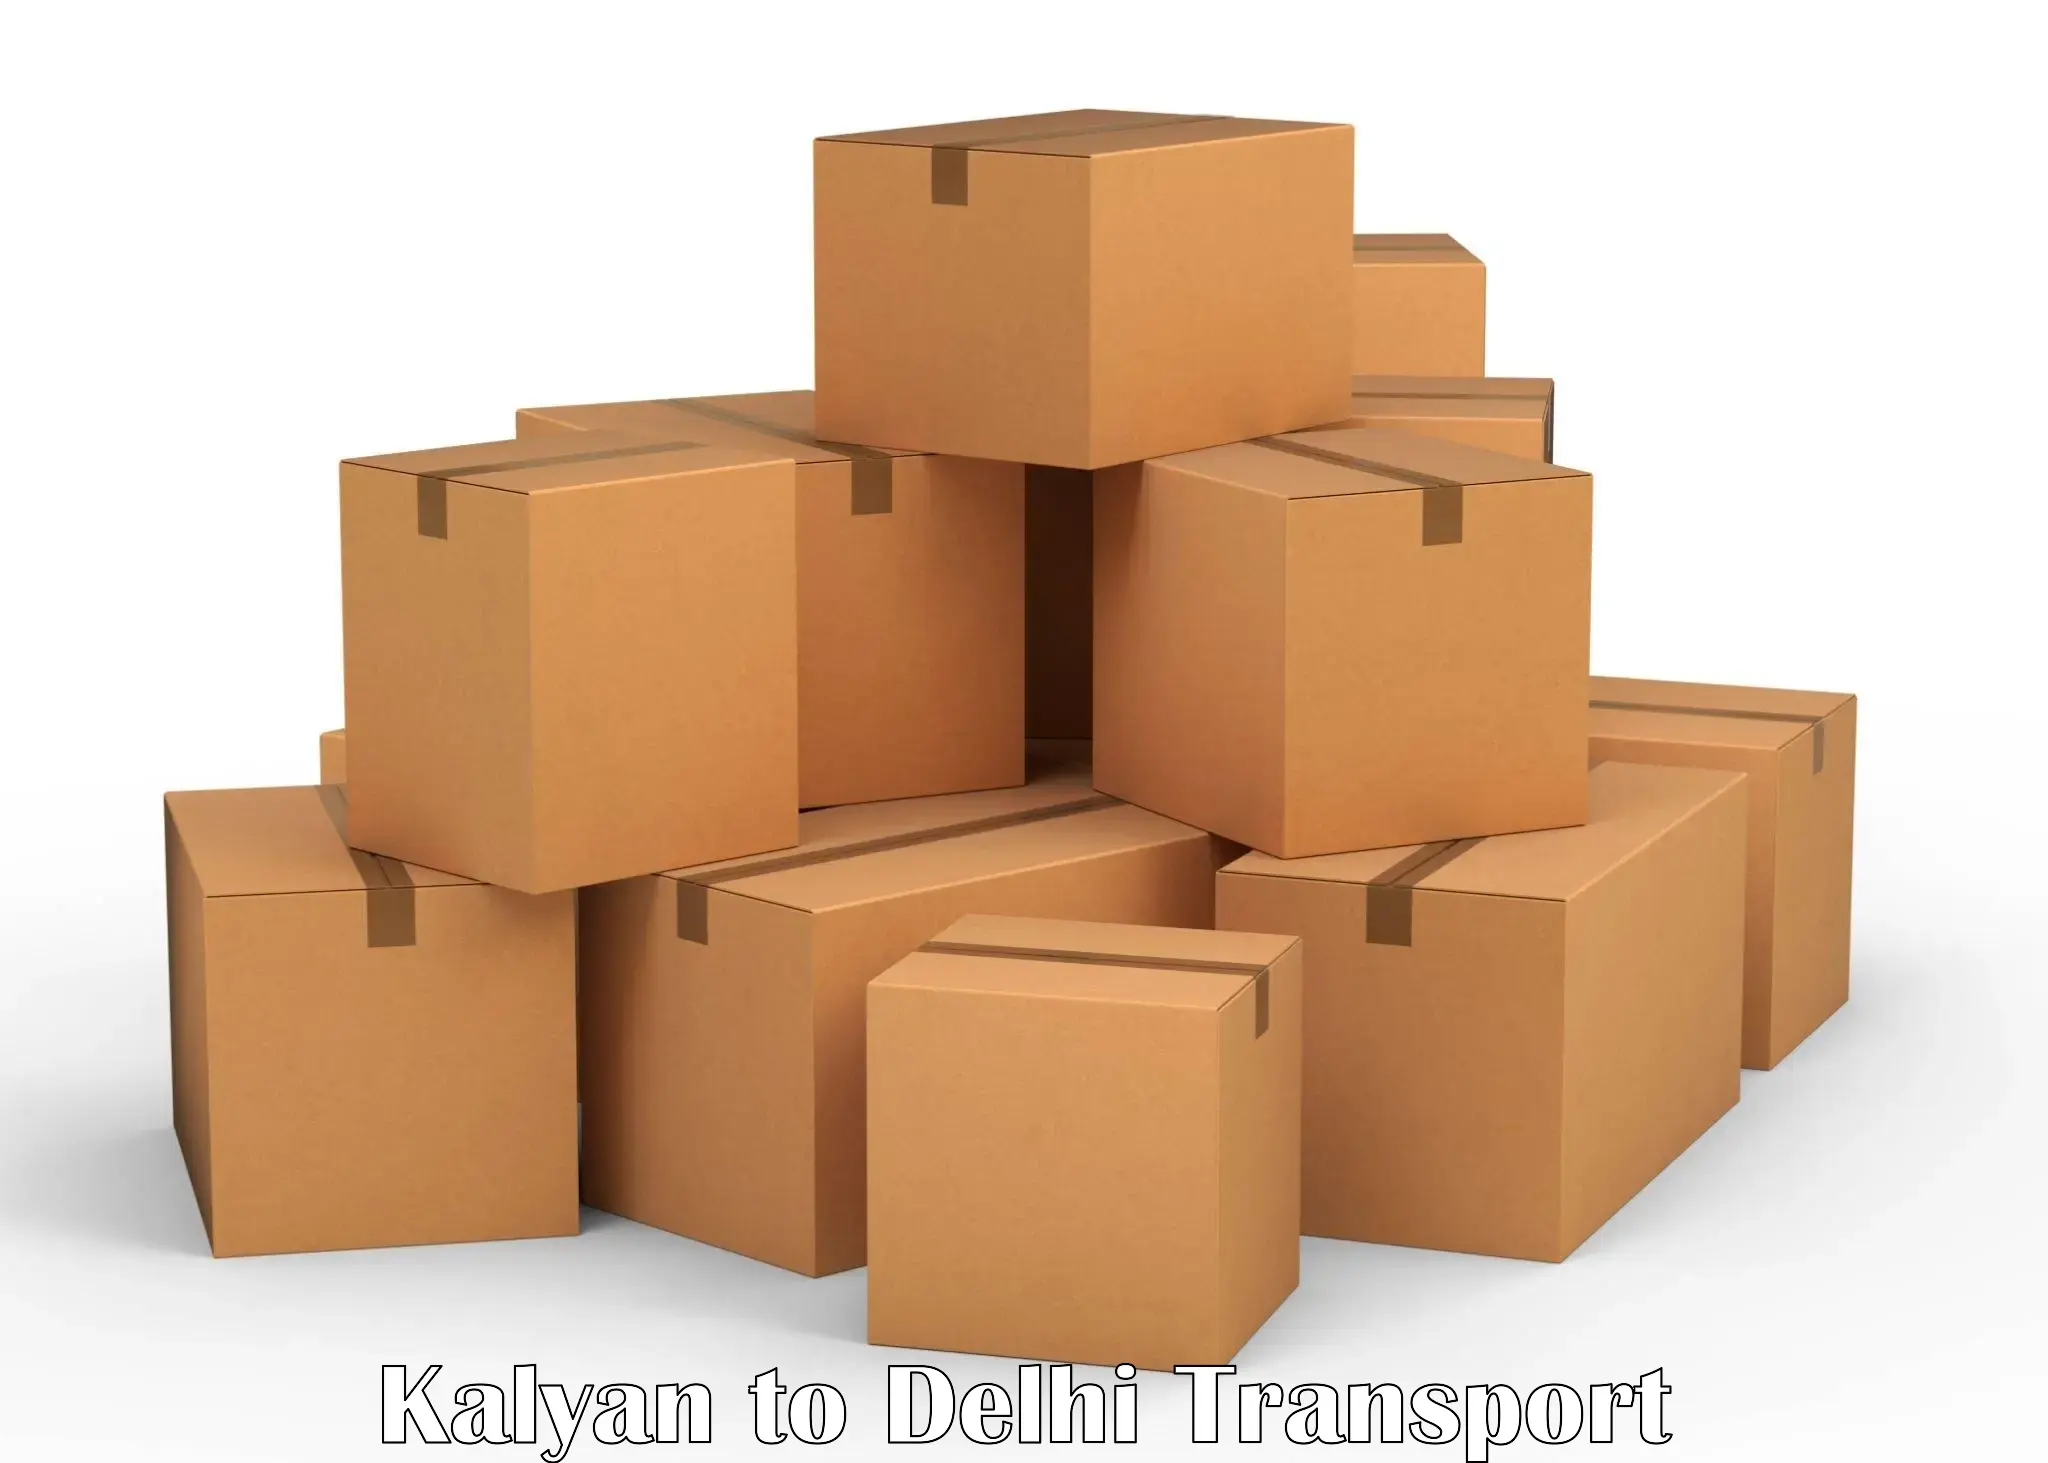 Nearest transport service Kalyan to Delhi